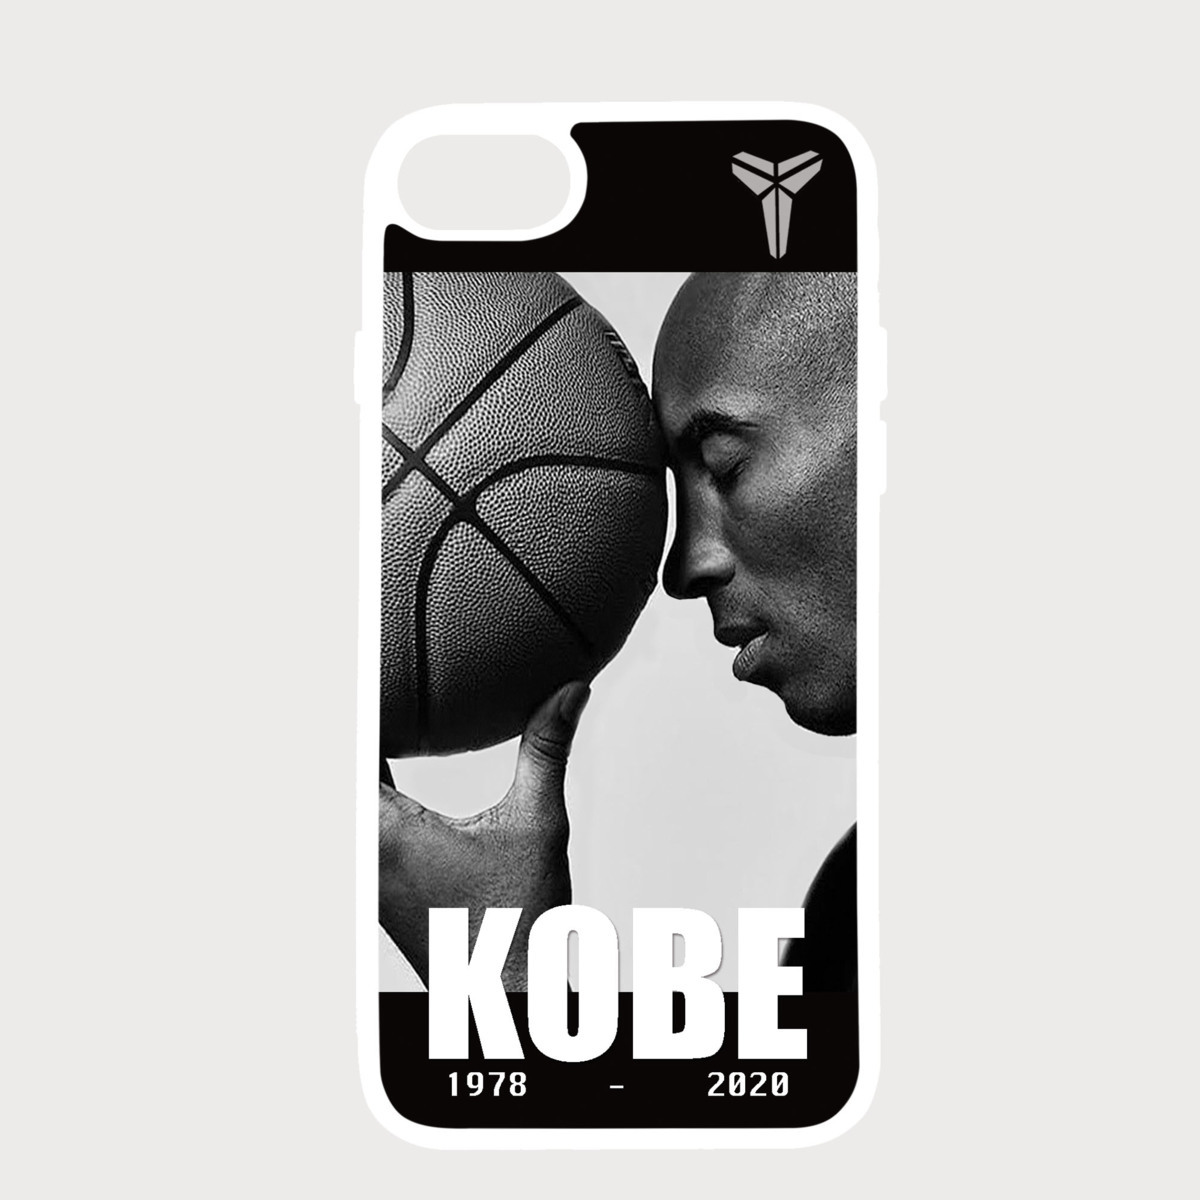 バスケットボール選手【Kobe Bryant/コービー・ブライアント】NBA/レイカーズ/Lakers/iPhone6s/6/7/8対応!スマホiPhoneケース/ホワイト-13